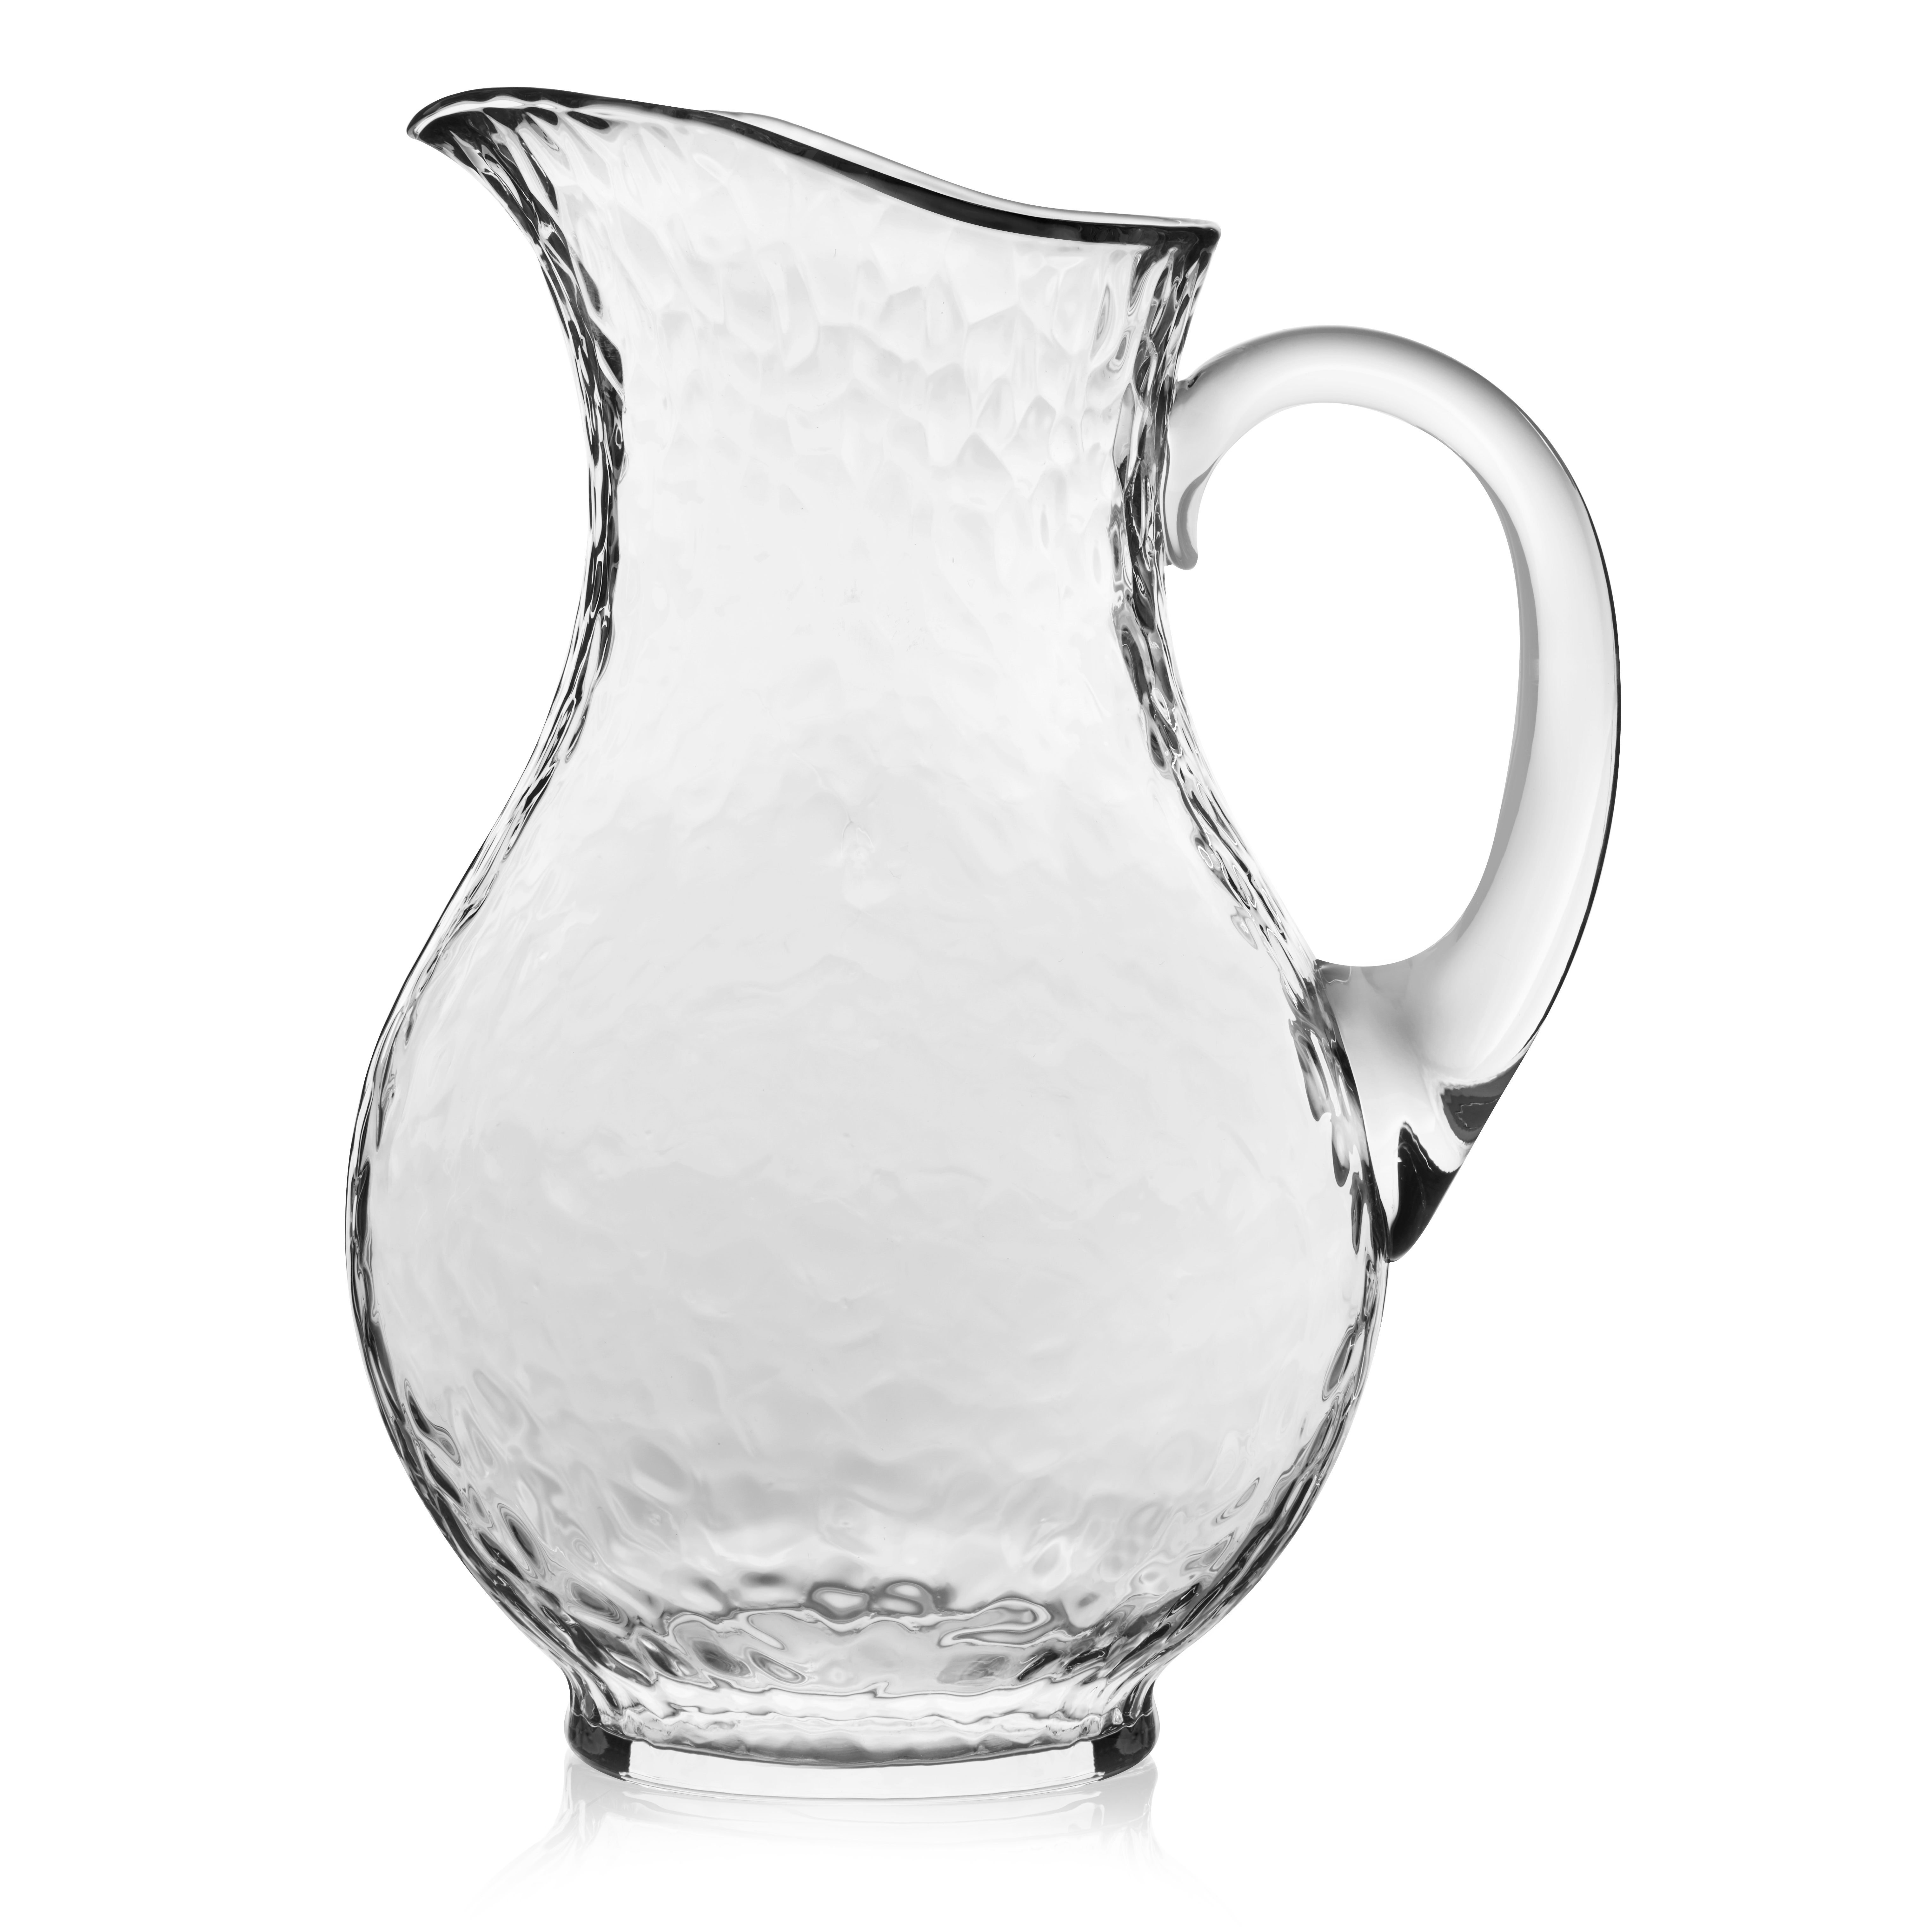 https://assets.wfcdn.com/im/66698962/compr-r85/2519/251987844/libbey-yucatan-glass-pitcher-869-ounce.jpg